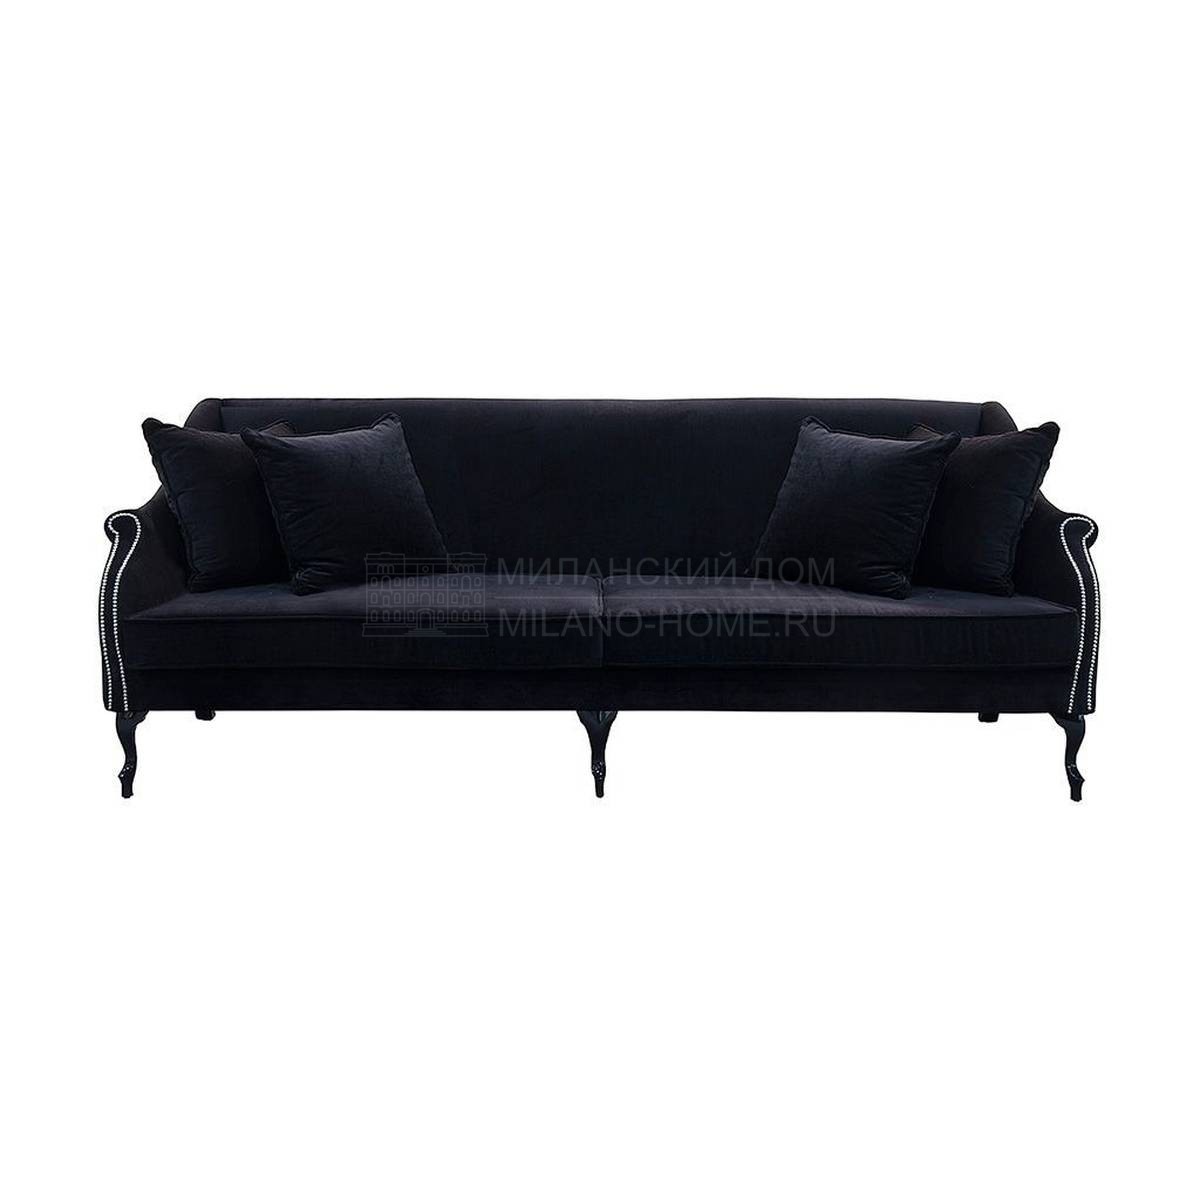 Прямой диван Z-8092 sofa из Испании фабрики GUADARTE